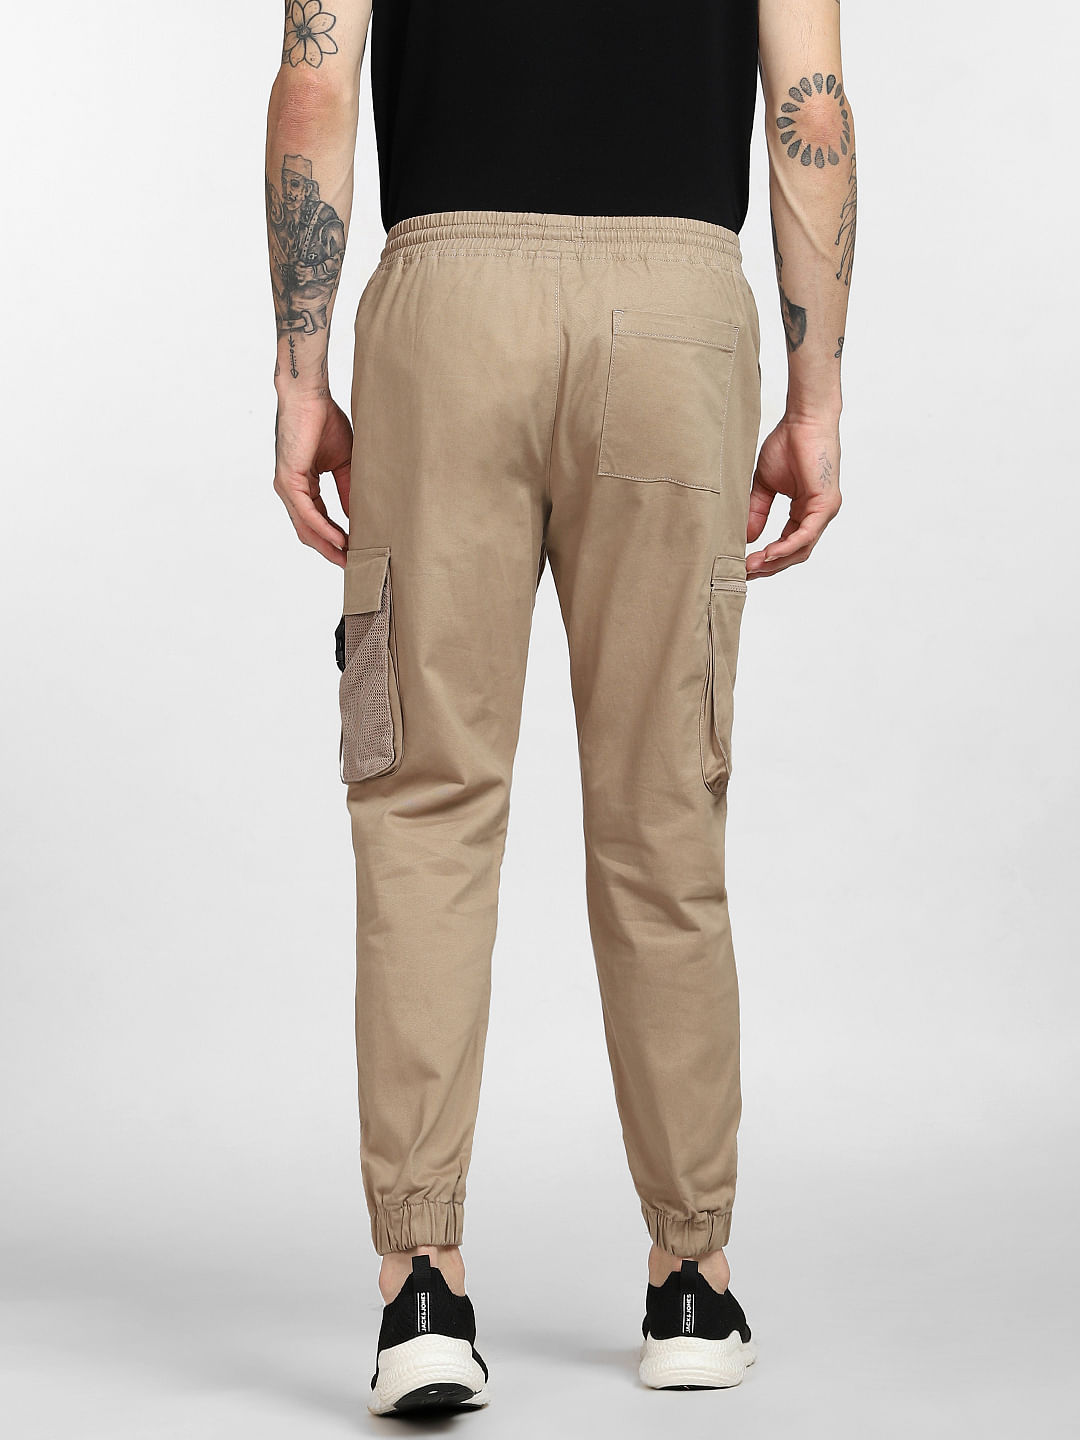 Buy Beige Trousers & Pants for Men by Jack & Jones Online | Ajio.com